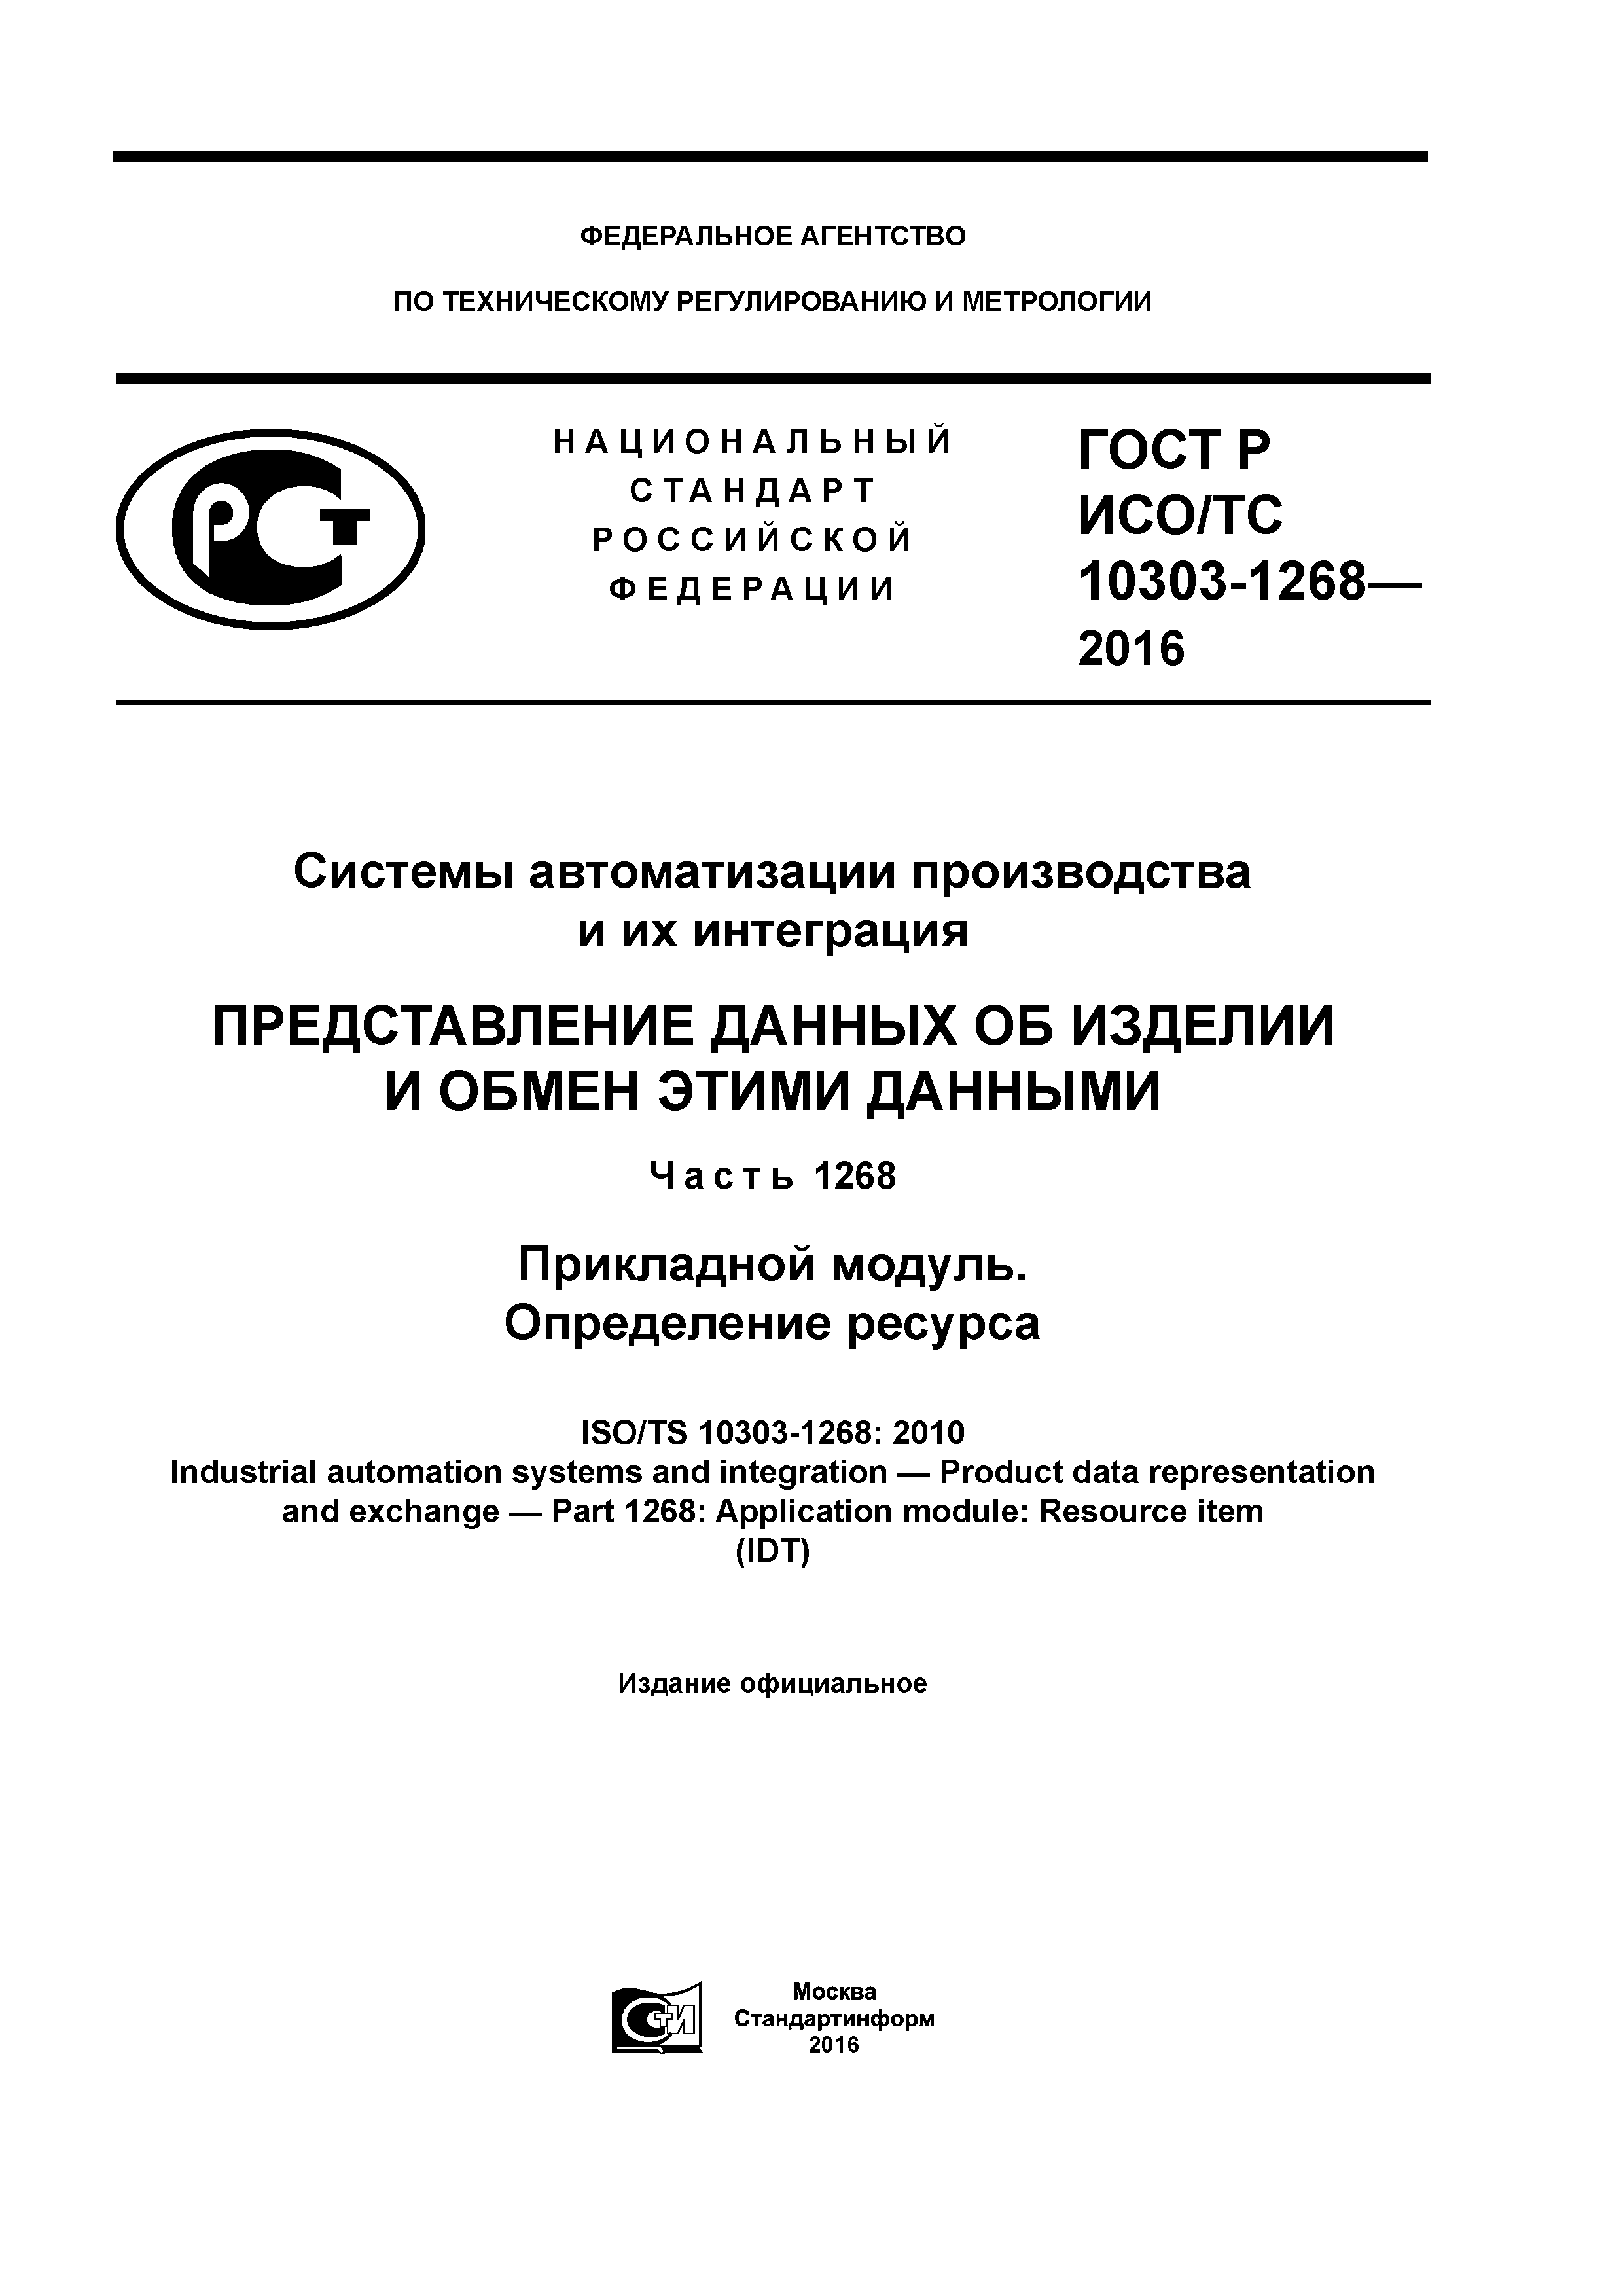 ГОСТ Р ИСО/ТС 10303-1268-2016